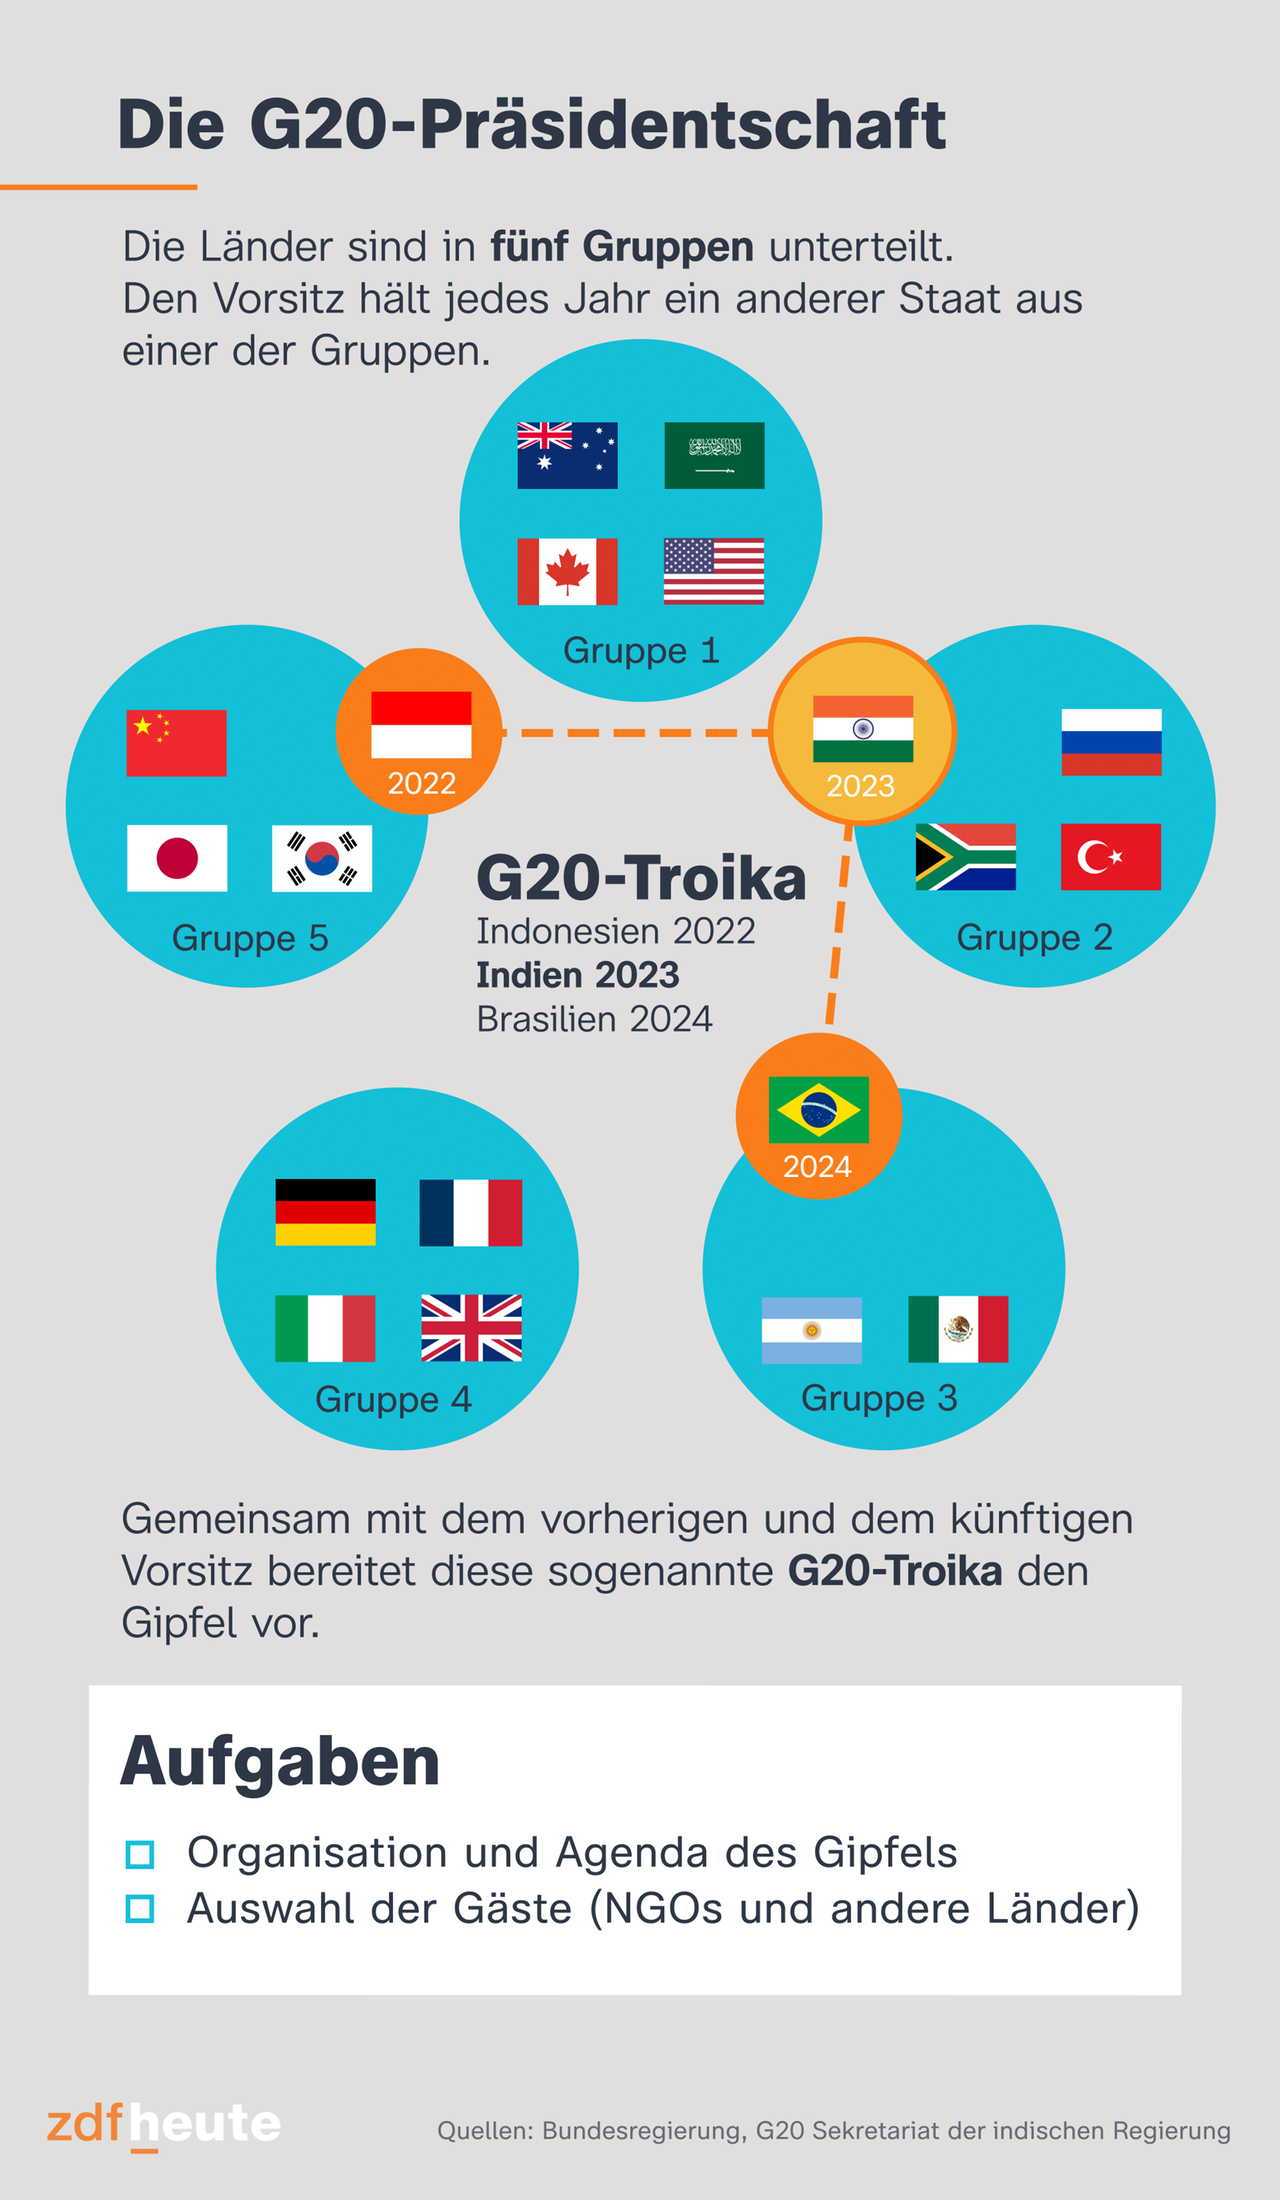 Auf der Infografik wird die Präsidentschaft der G20 erklärt. Sie 19 Länder und die EU sind in fünd Gruppen unterteilt. Den Vositz hält jedes Jahr ein anderer Staat aus einer der Gruppen. Diese sogenannte G20-Troika bilden in diesem Jahr, Indonesien, Indien und Brasilien. Zu den Aufgaben zählen die Organisation und Agenda des Gipfels und die Auswahl der Gäste wie NGOs und andere Länder, die eingeladen werden.  